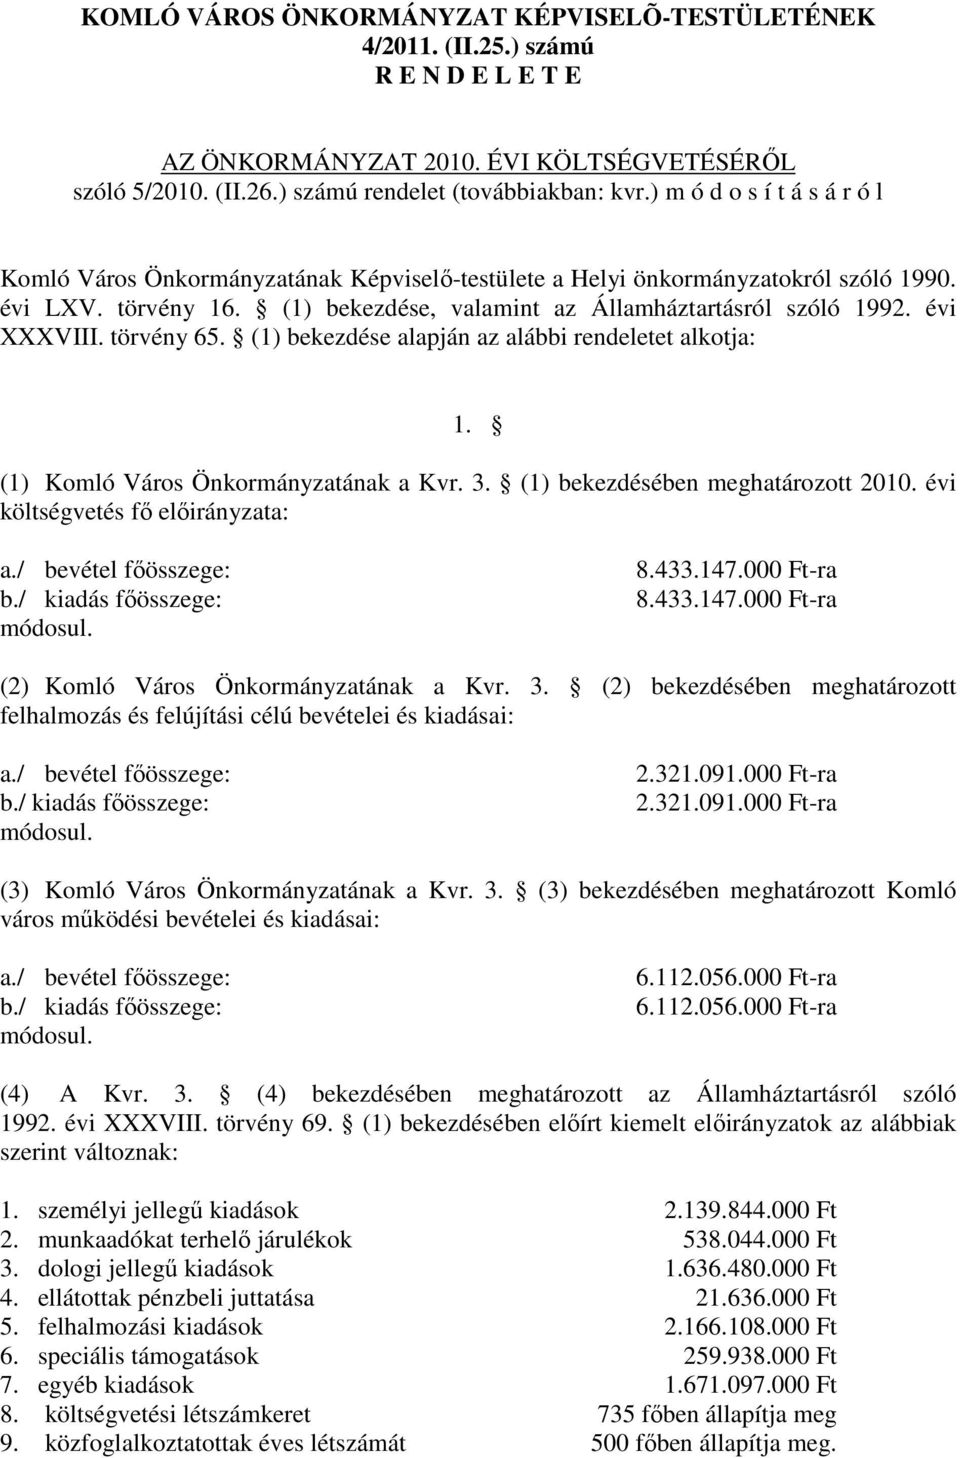 évi XXXVIII. törvény 65. (1) bekezdése alapján az alábbi rendeletet alkotja: 1. (1) Komló Város Önkormányzatának a Kvr. 3. (1) bekezdésében meghatározott 2010. évi költségvetés fı elıirányzata: a.